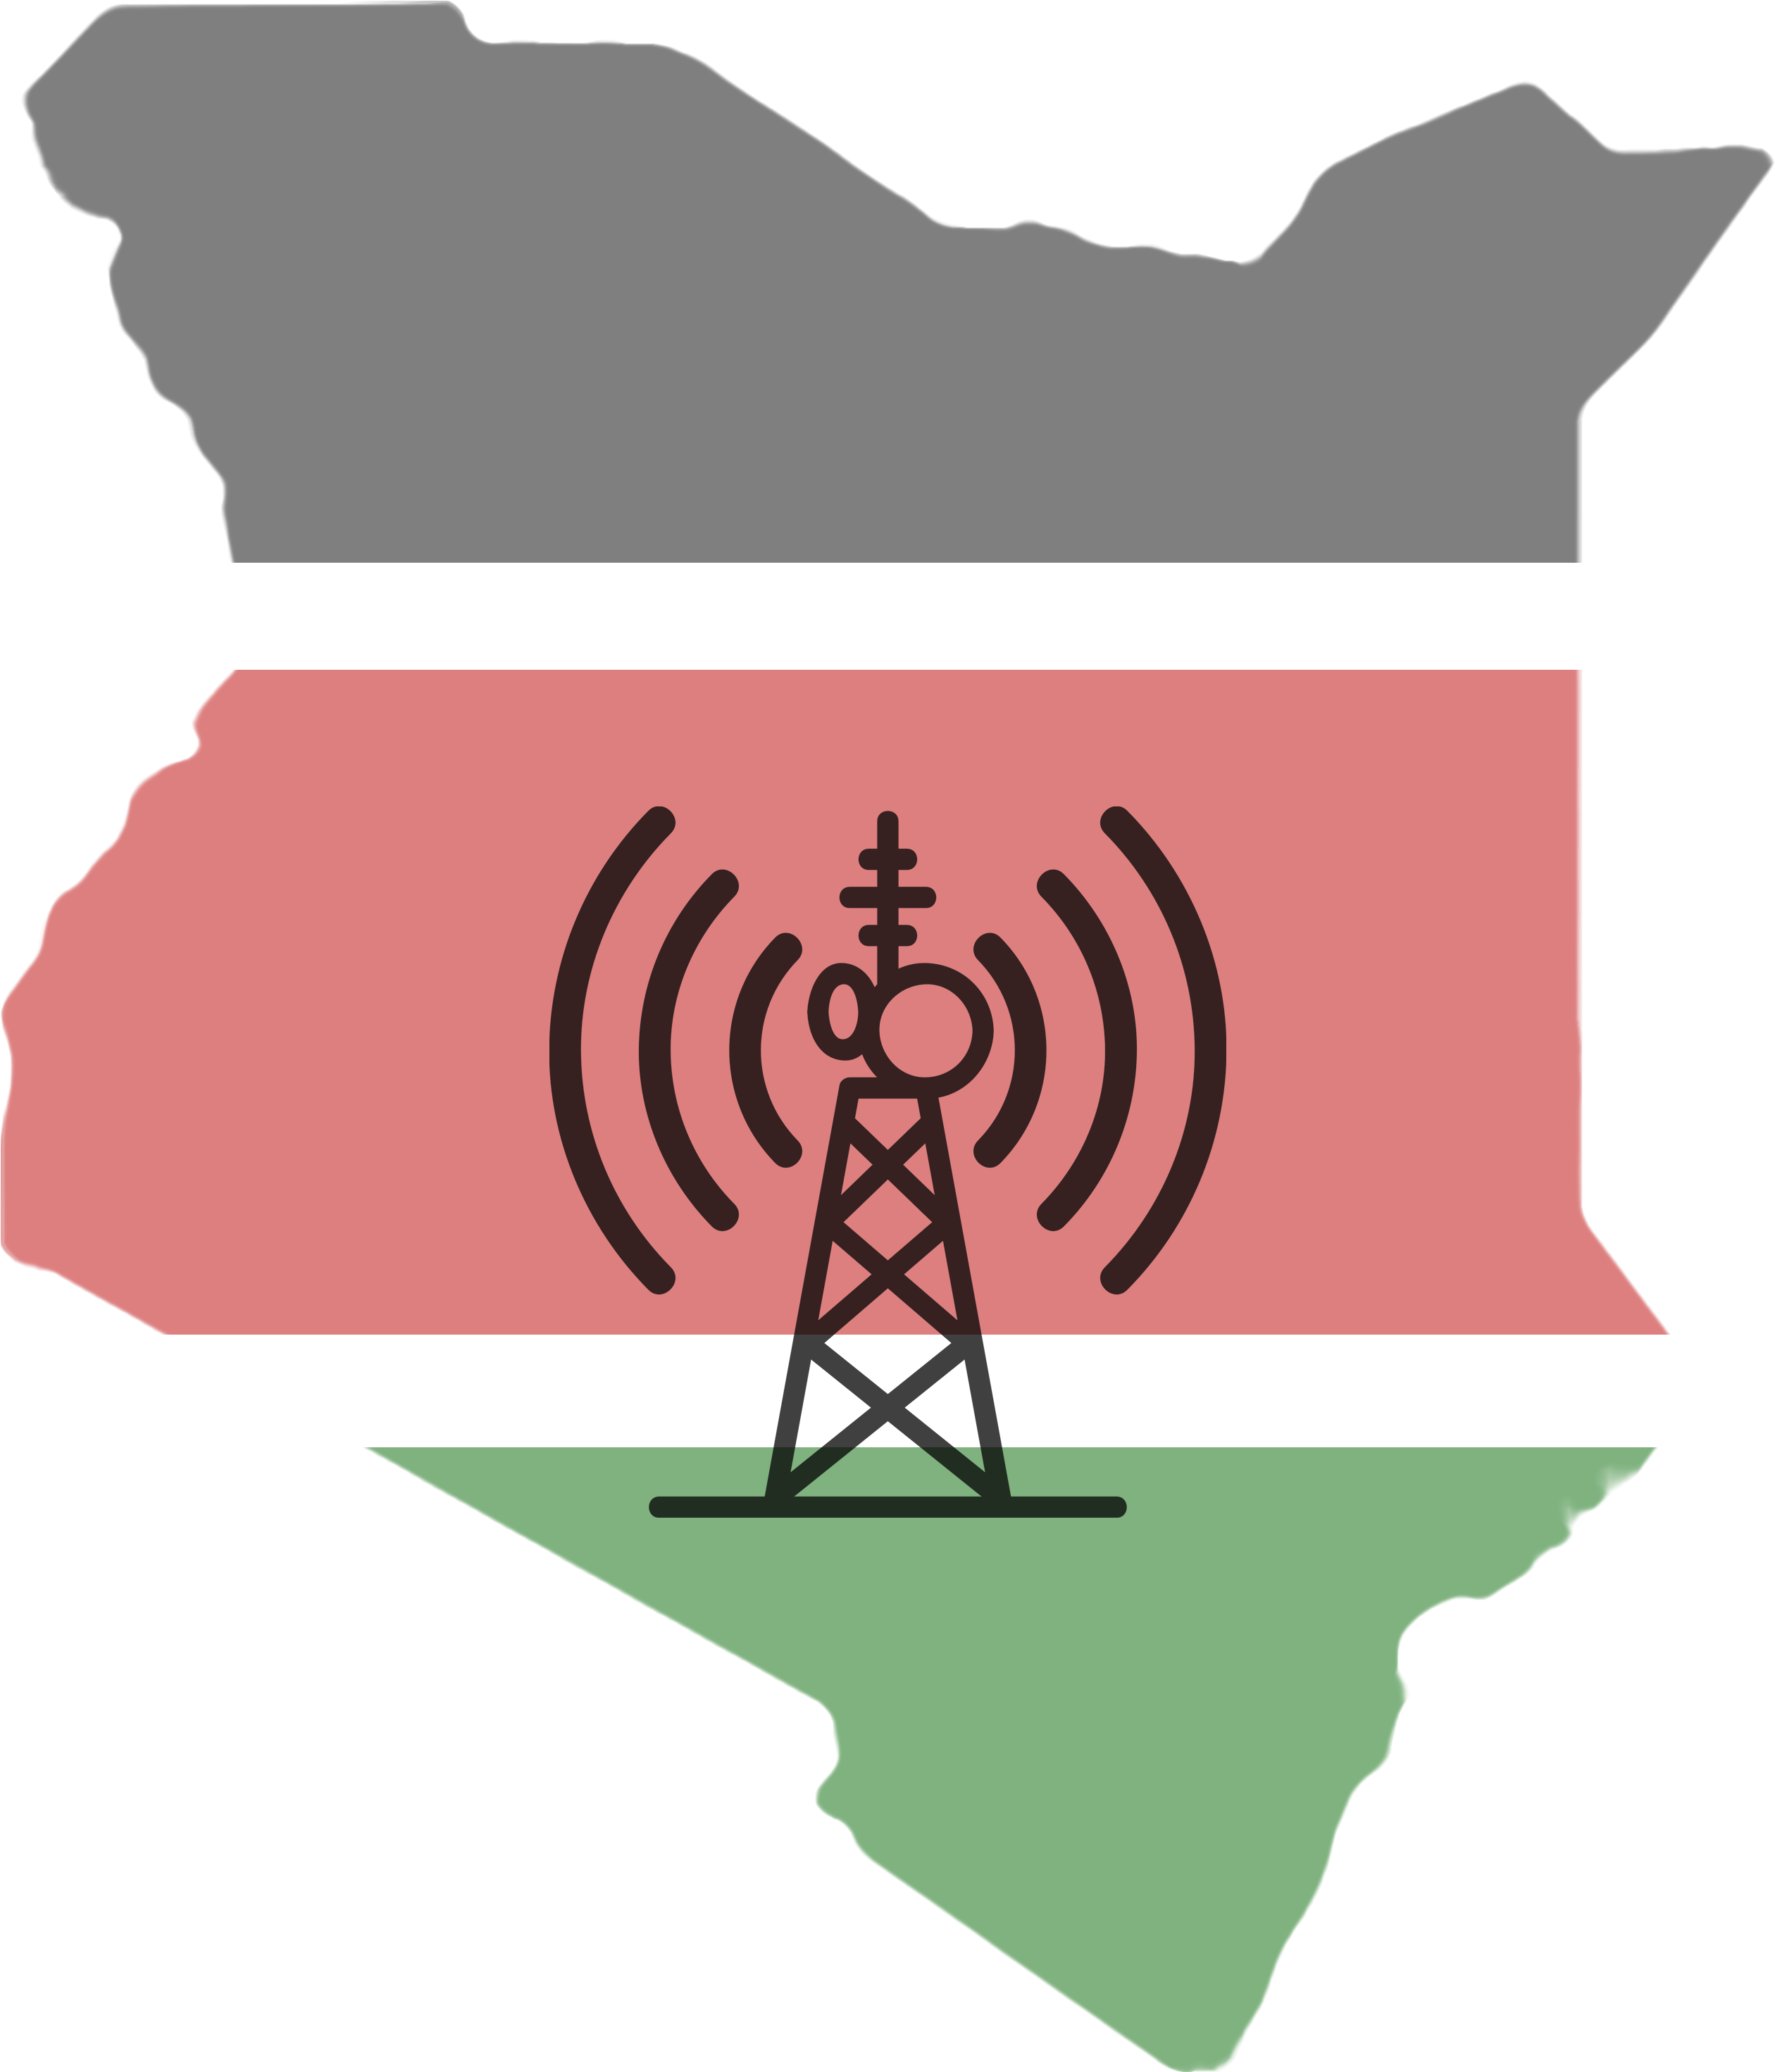 Kenya - Kenya Png (2862x3162)